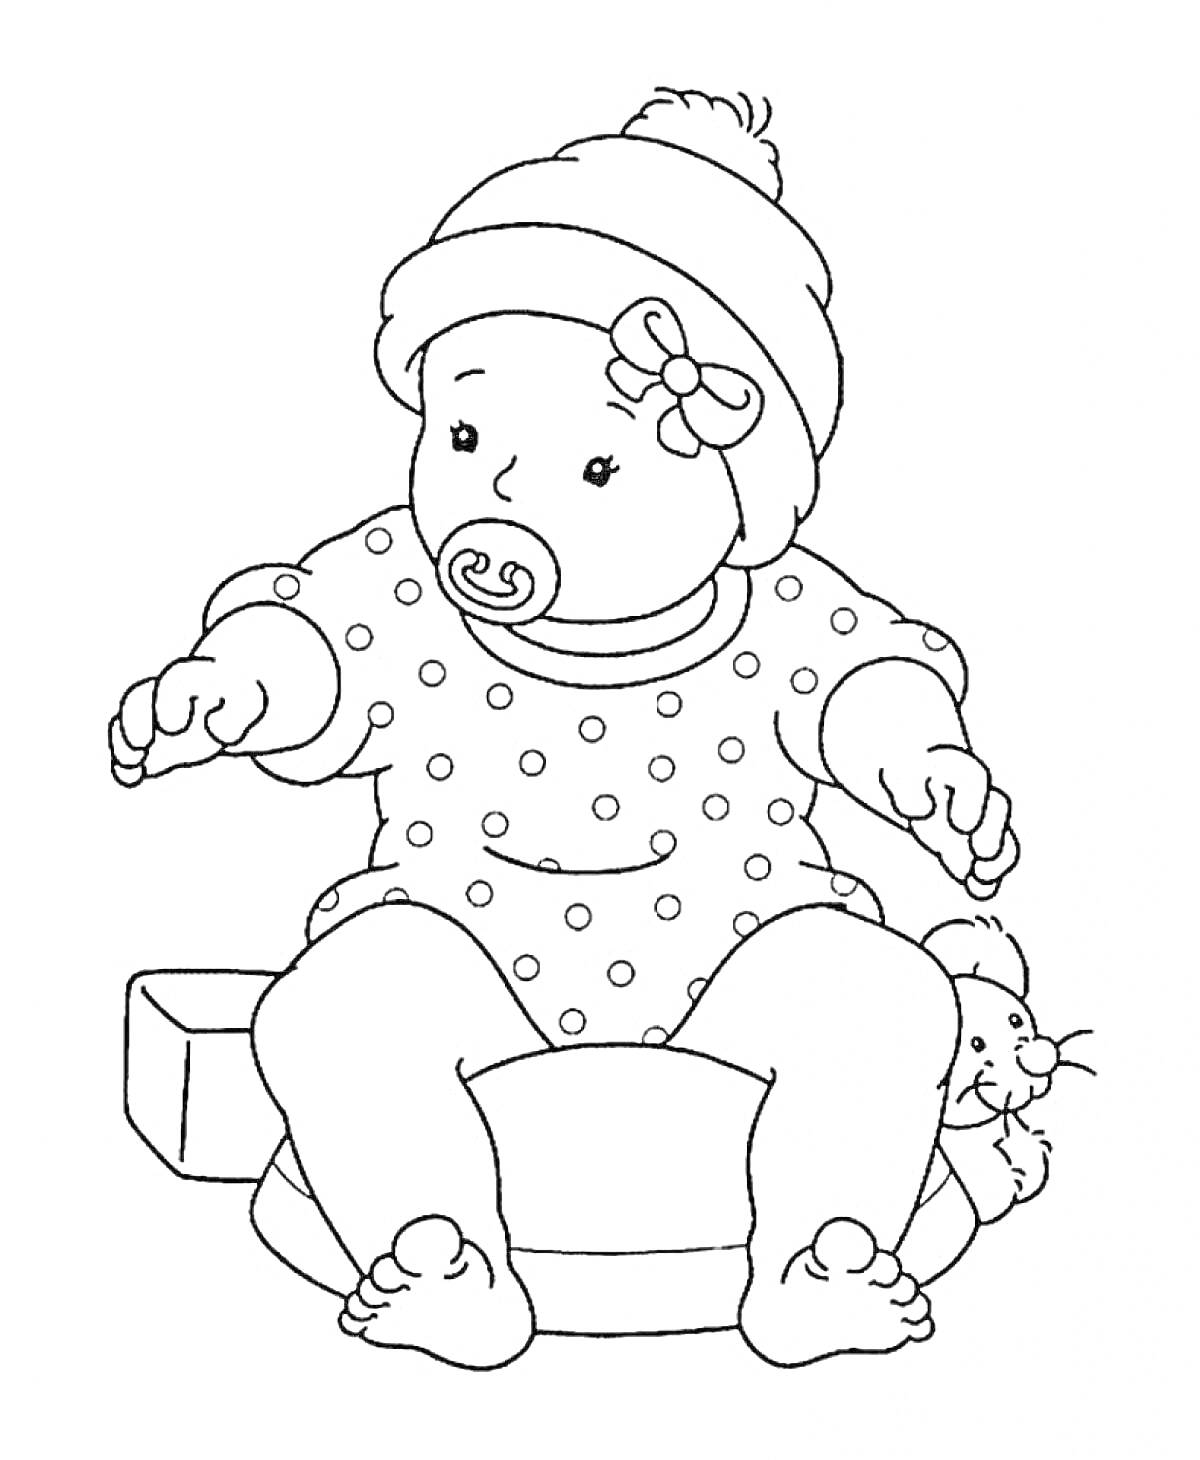 Раскраска Кукла в горошковом комбинезоне с соской, шапкой, бантиком на голове, сидящая на стуле и держащая плюшевого мышонка